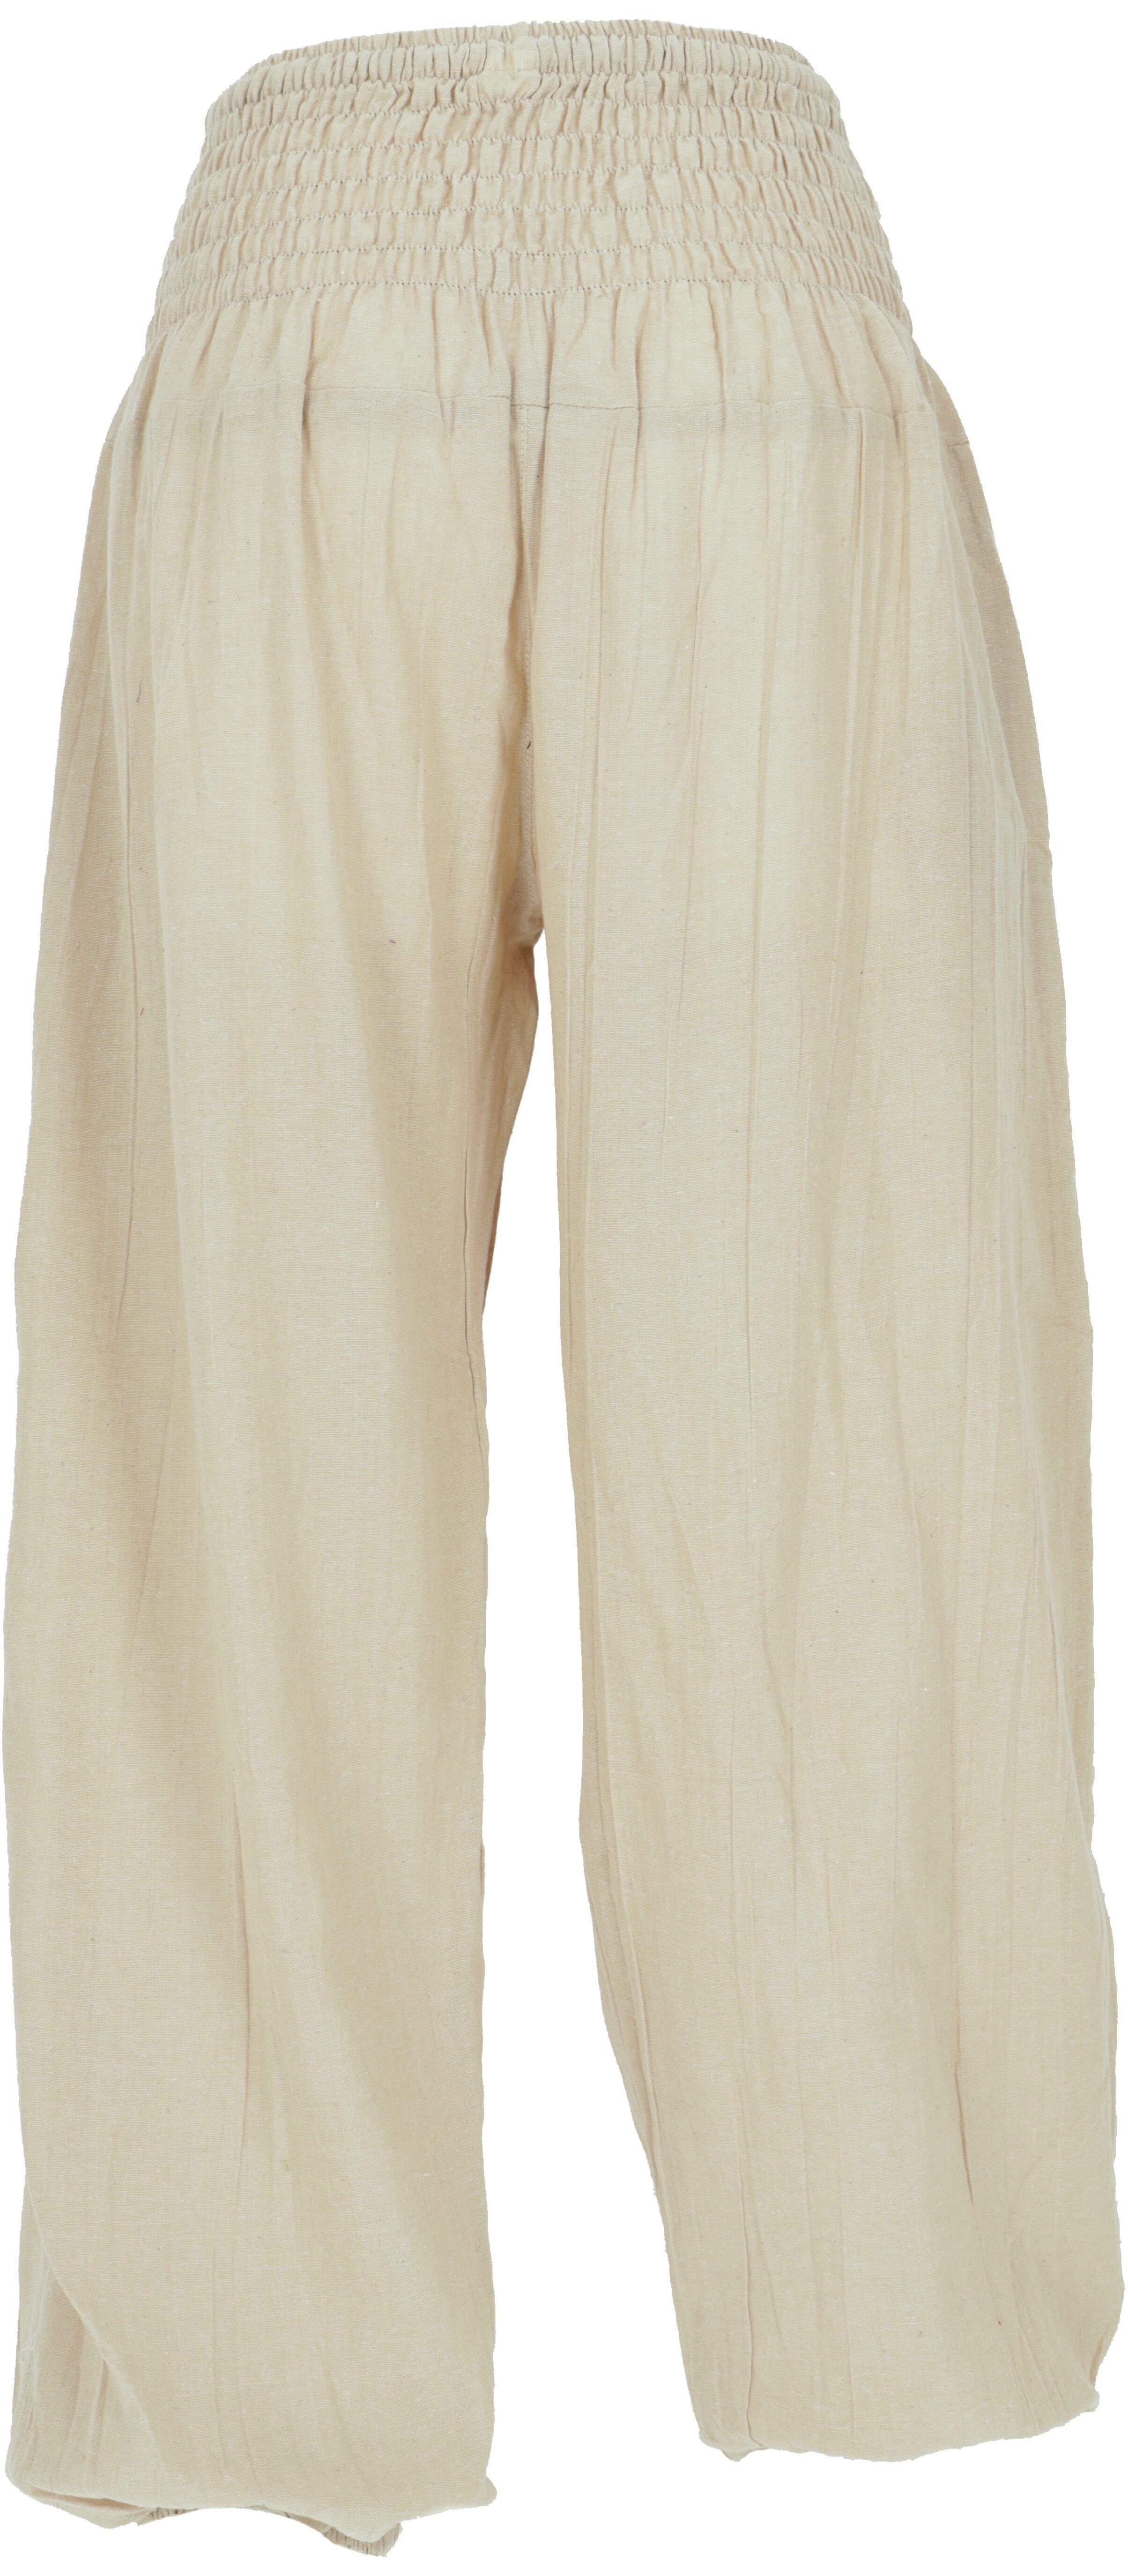 Relaxhose Style, - alternative Aladinhose beige Guru-Shop Ethno Bund Bekleidung Muckhose, breitem mit